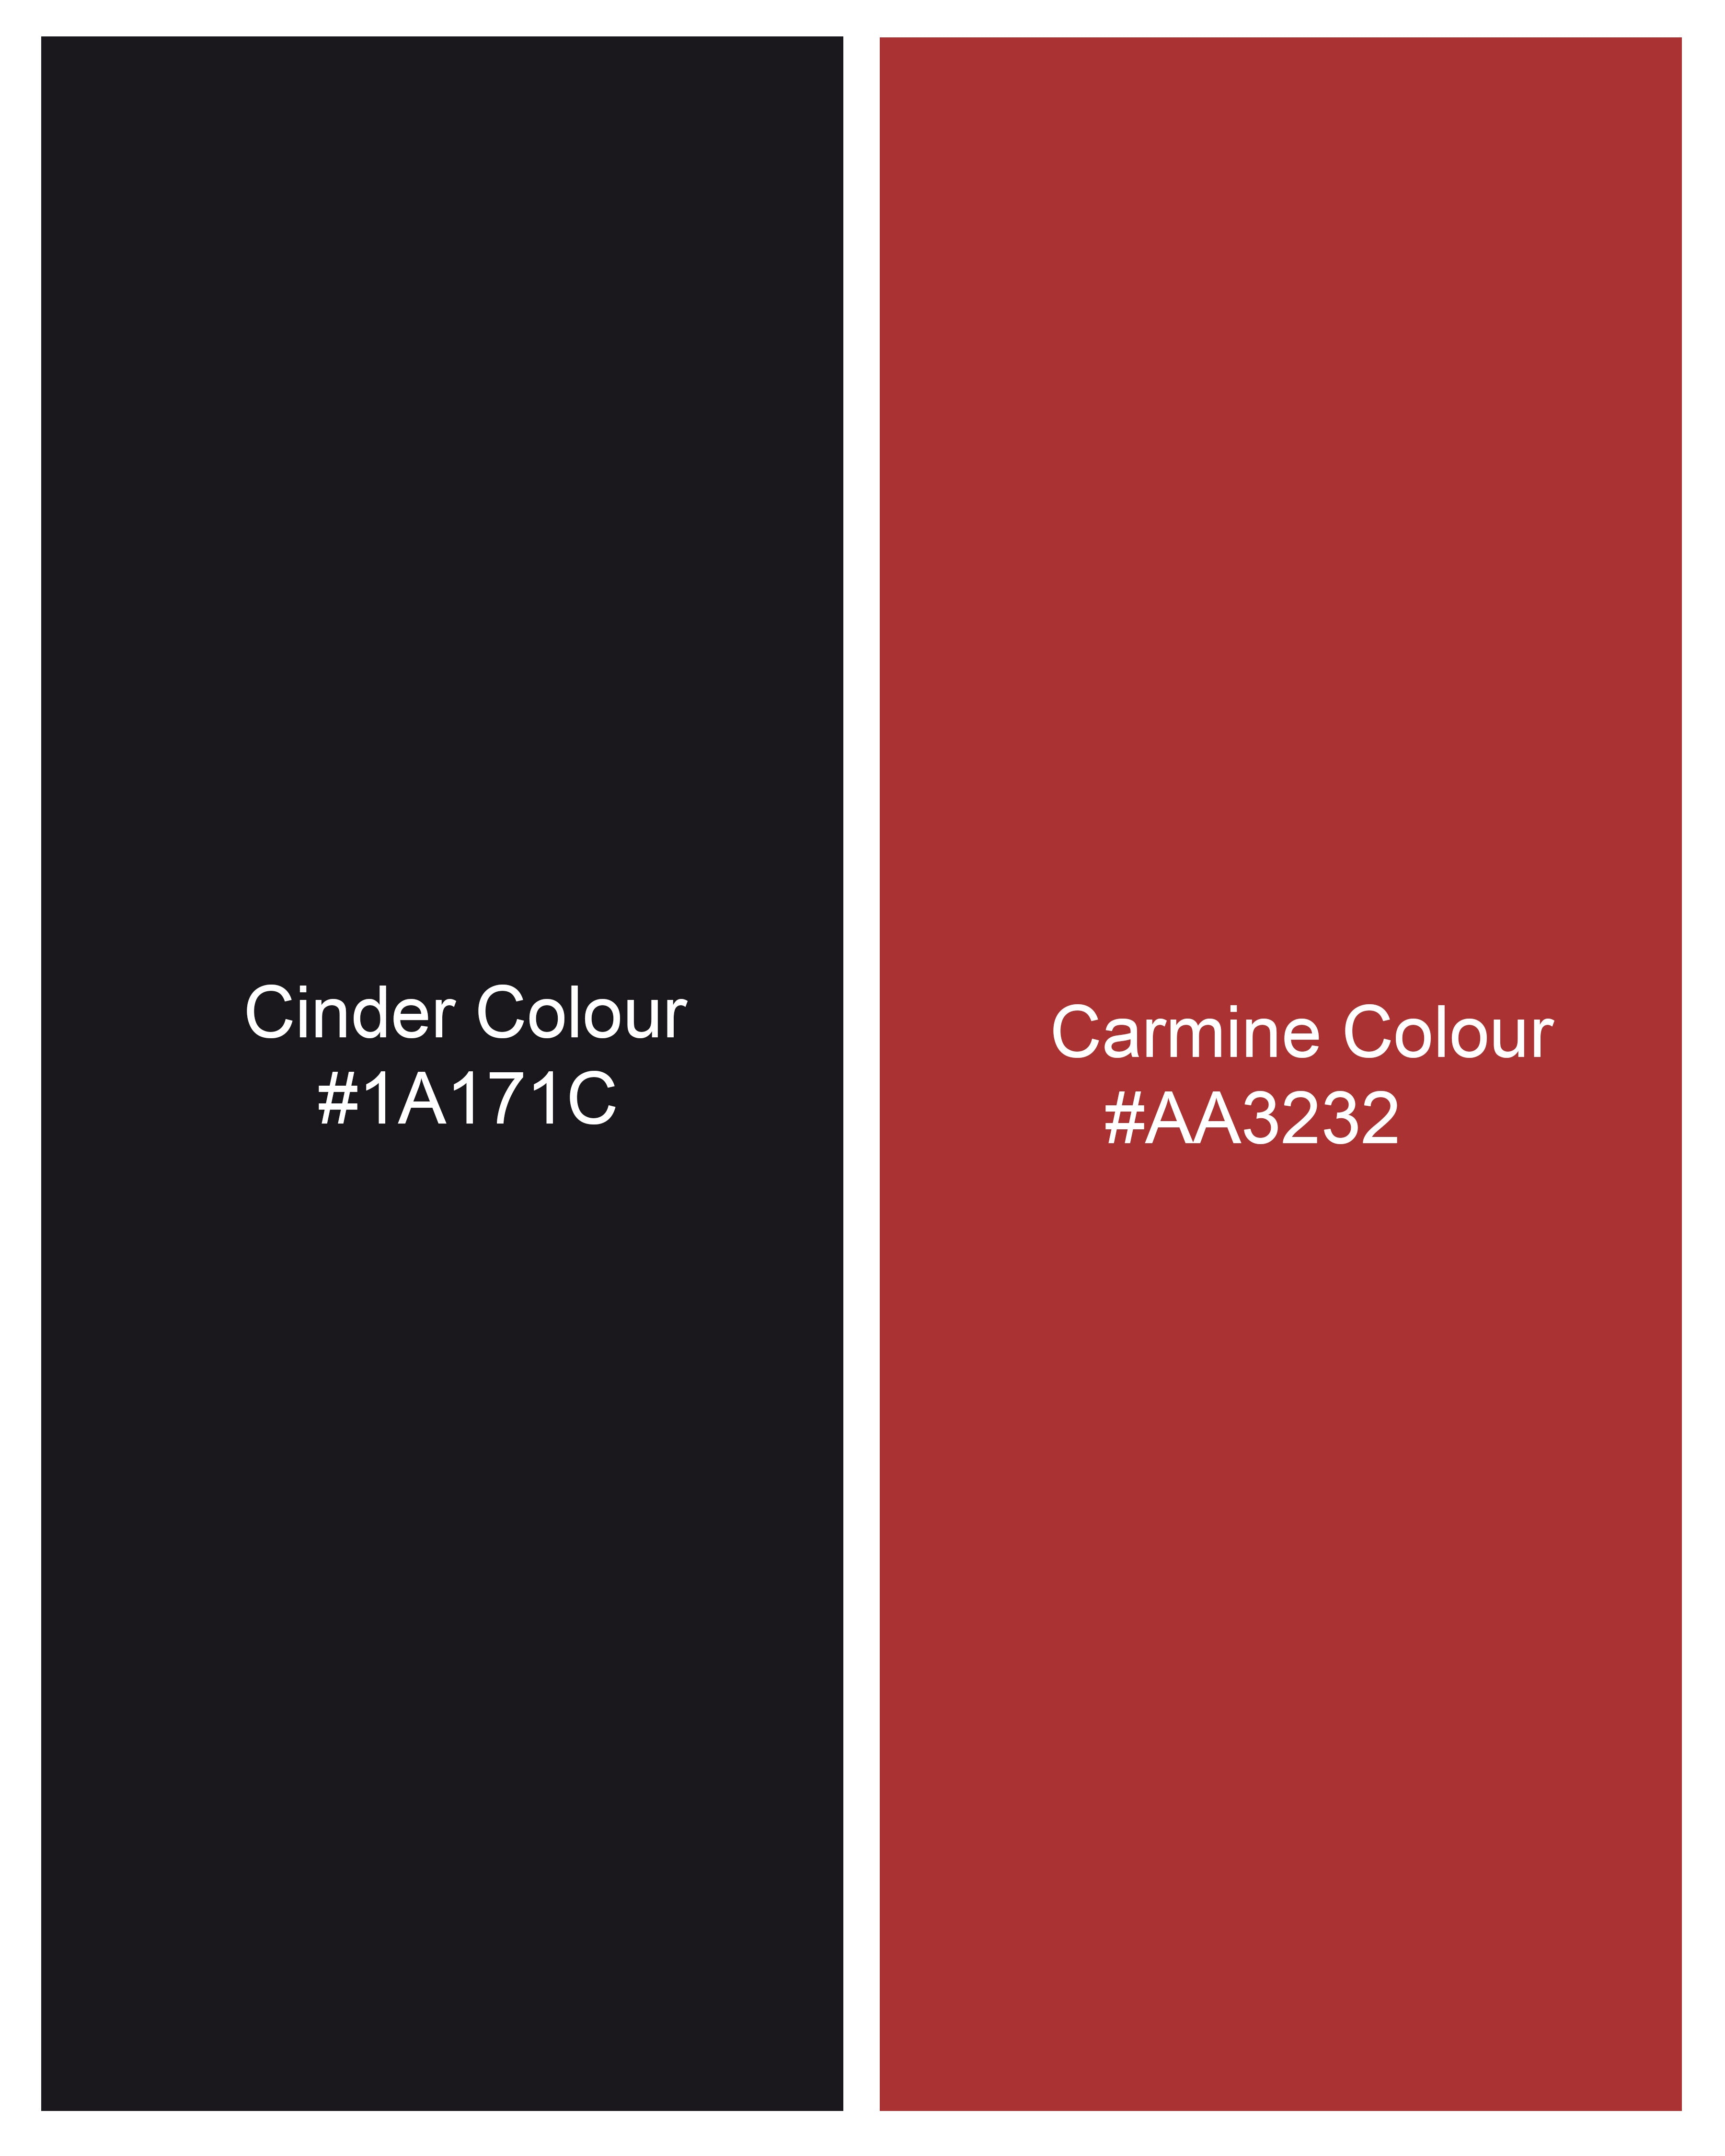 Cinder Black and Carmine Red Honeycomb Pattern Premium Cotton Kurta Shirt 9071-KS-38, 9071-KS-H-38, 9071-KS-39, 9071-KS-H-39, 9071-KS-40, 9071-KS-H-40, 9071-KS-42, 9071-KS-H-42, 9071-KS-44, 9071-KS-H-44, 9071-KS-46, 9071-KS-H-46, 9071-KS-48, 9071-KS-H-48, 9071-KS-50, 9071-KS-H-50, 9071-KS-52, 9071-KS-H-52